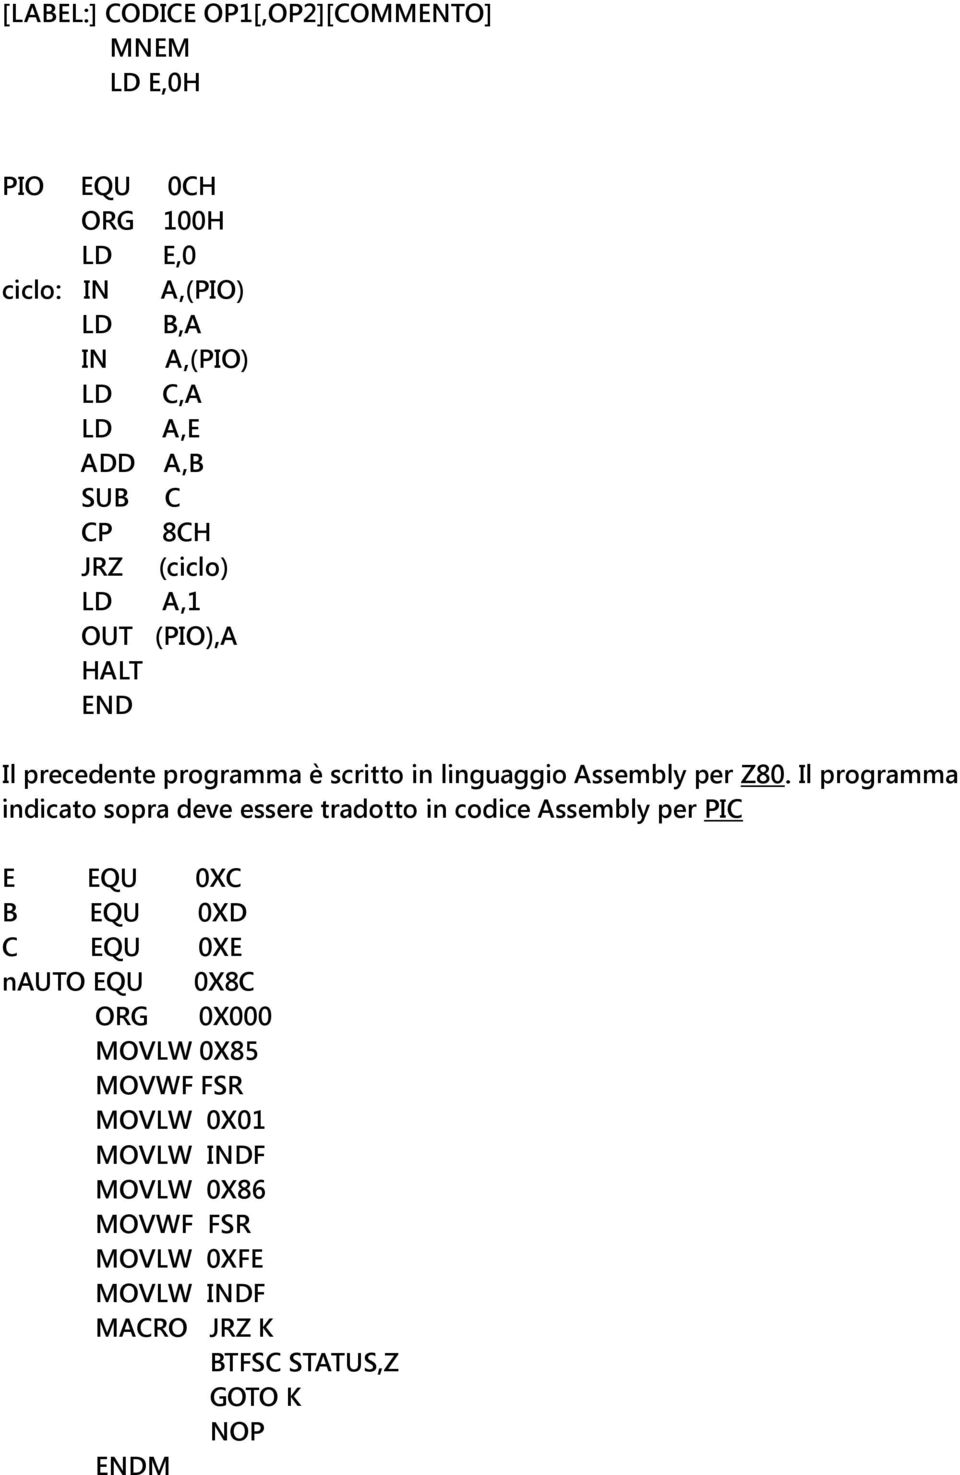 Il programma indicato sopra deve essere tradotto in codice Assembly per PIC E EQU 0XC B EQU 0XD C EQU 0XE nauto EQU 0X8C ORG